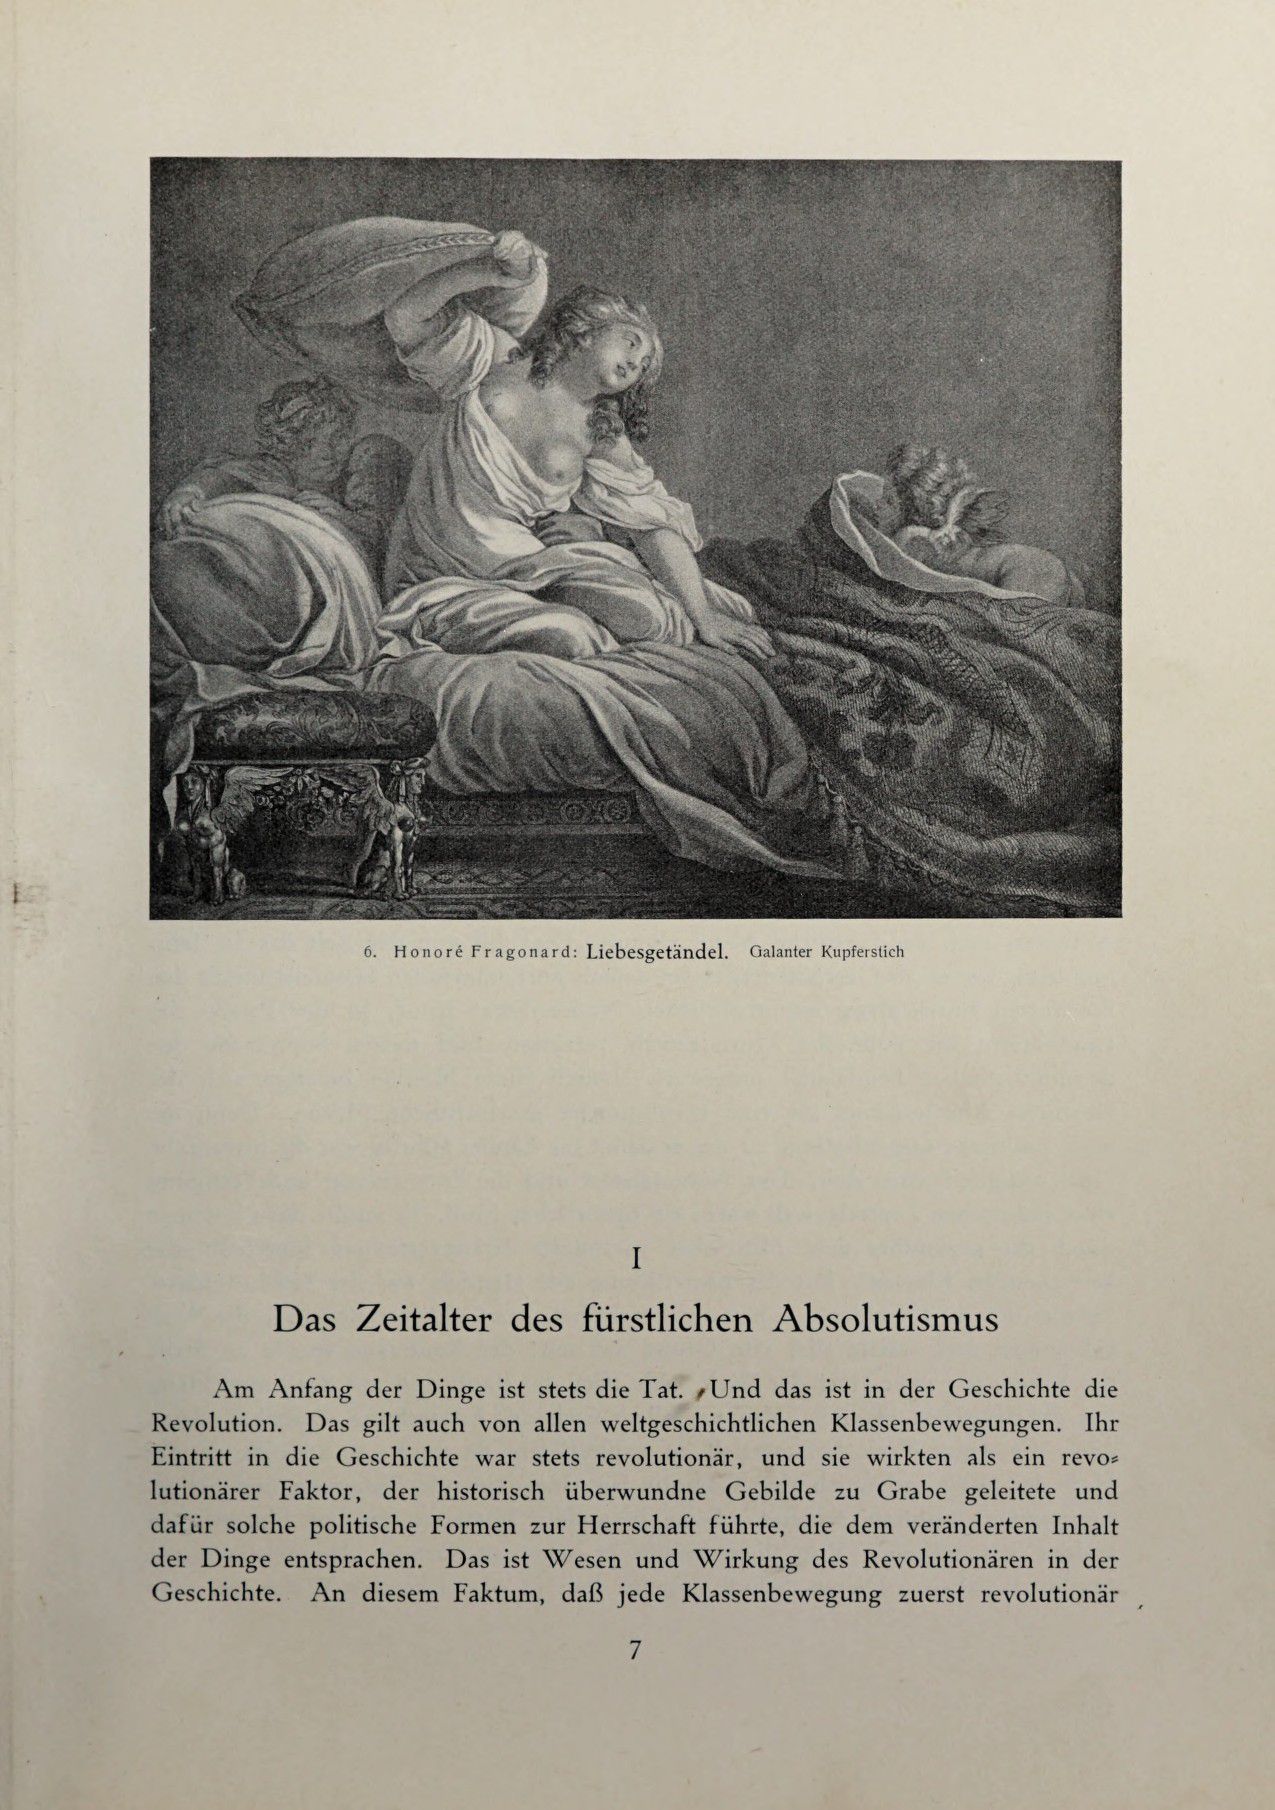 [Eduard Fuchs] Illustrierte Sittengeschichte vom Mittelalter bis zur Gegenwart: Bd. 2. and Ergänzungsband. Die galante Zeit [German] 24